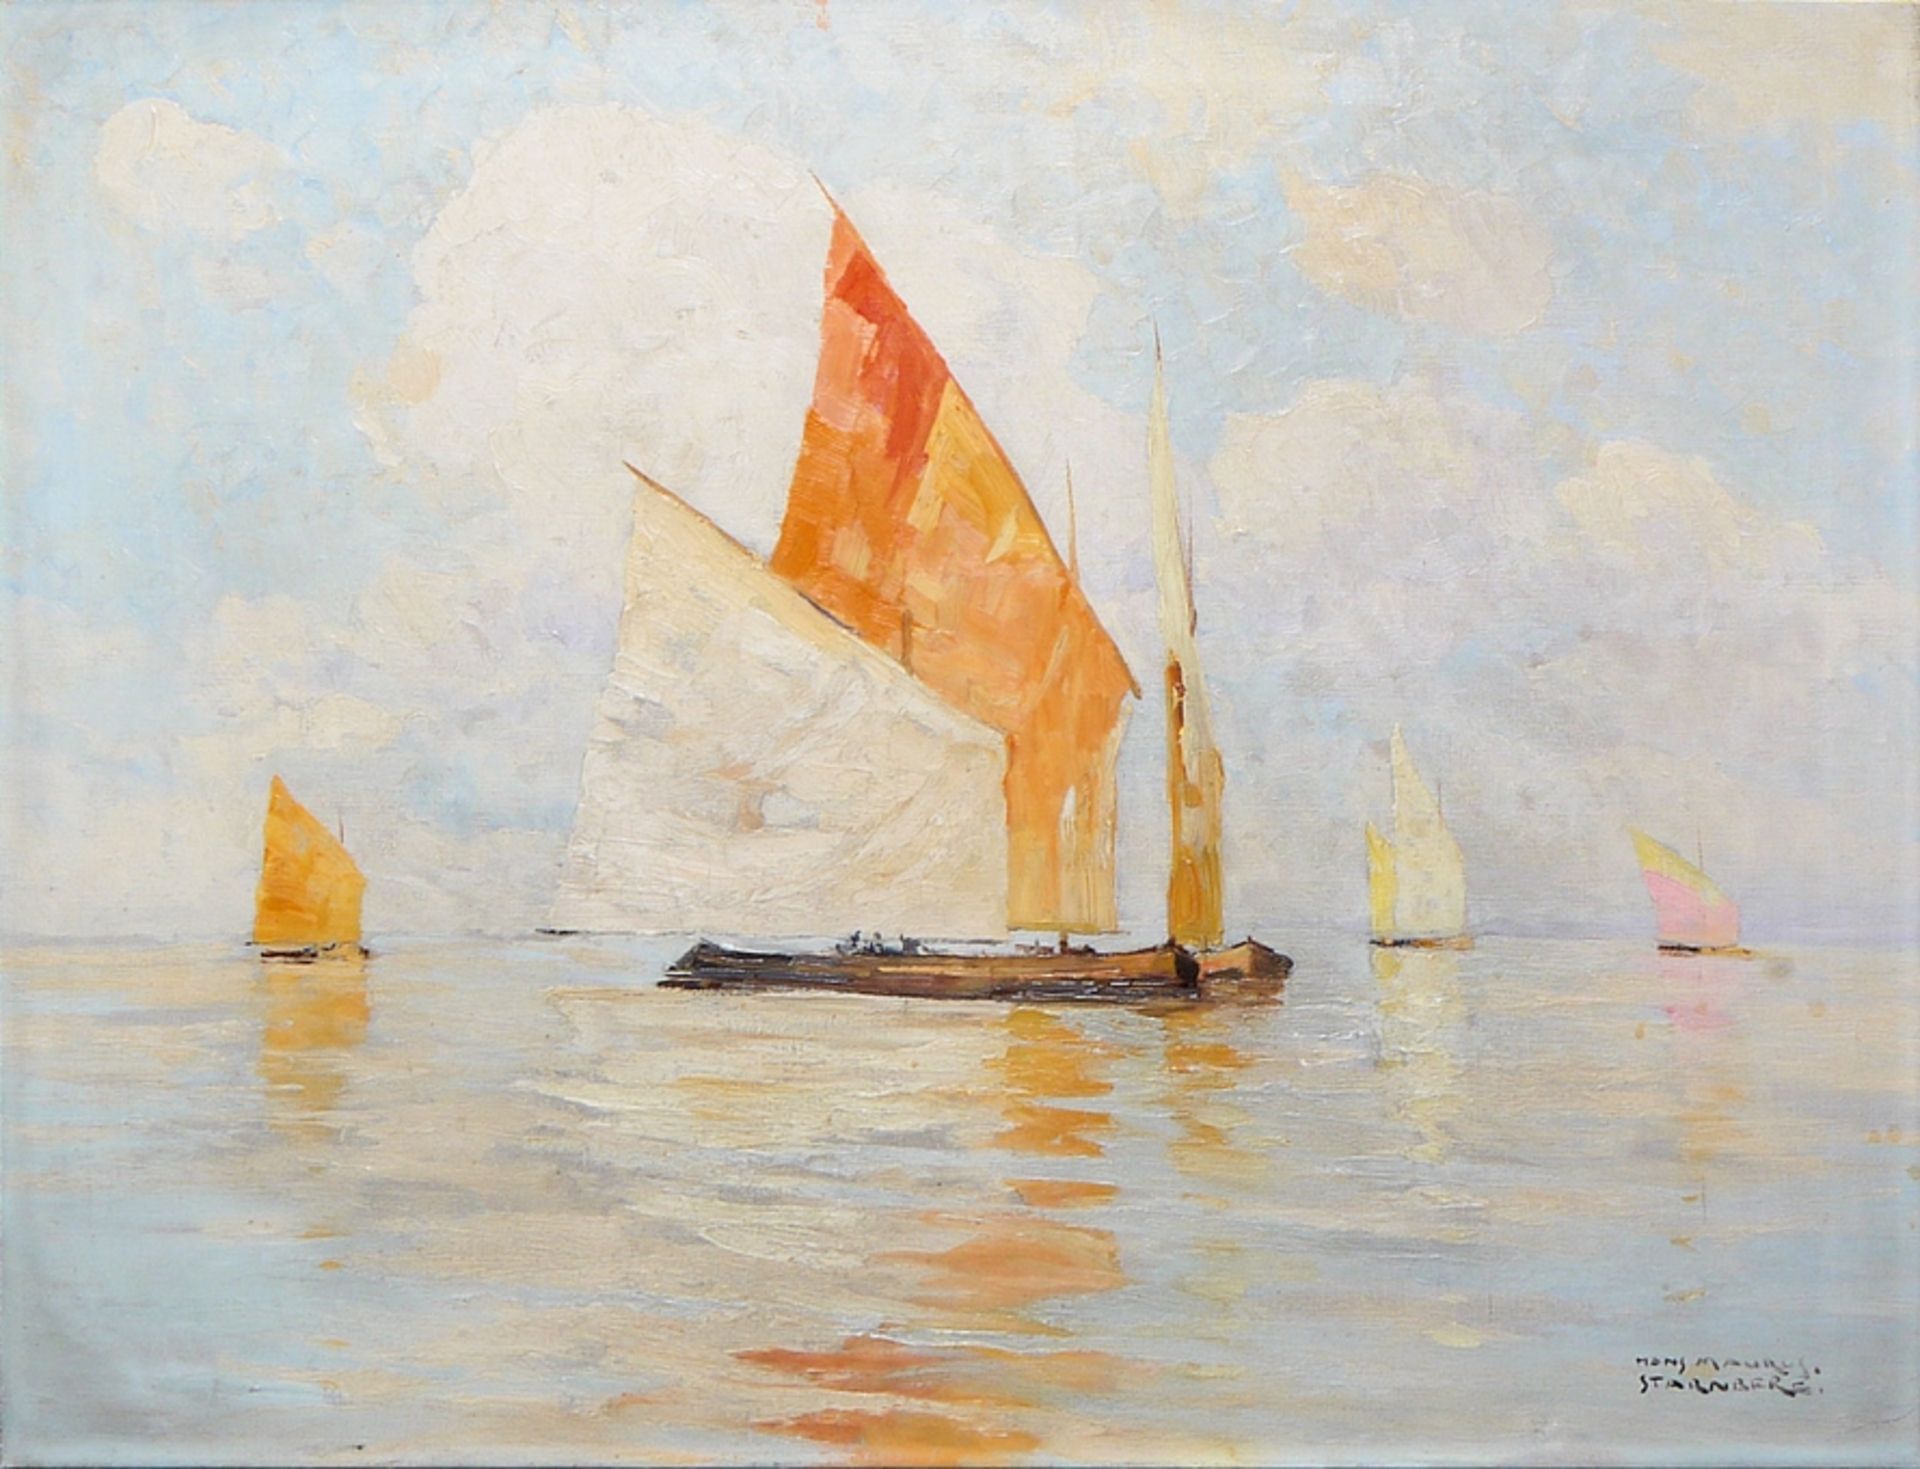 Hans Maurus, Boats on Lake Starnberg, oil painting c. 1930, framed - Image 3 of 4